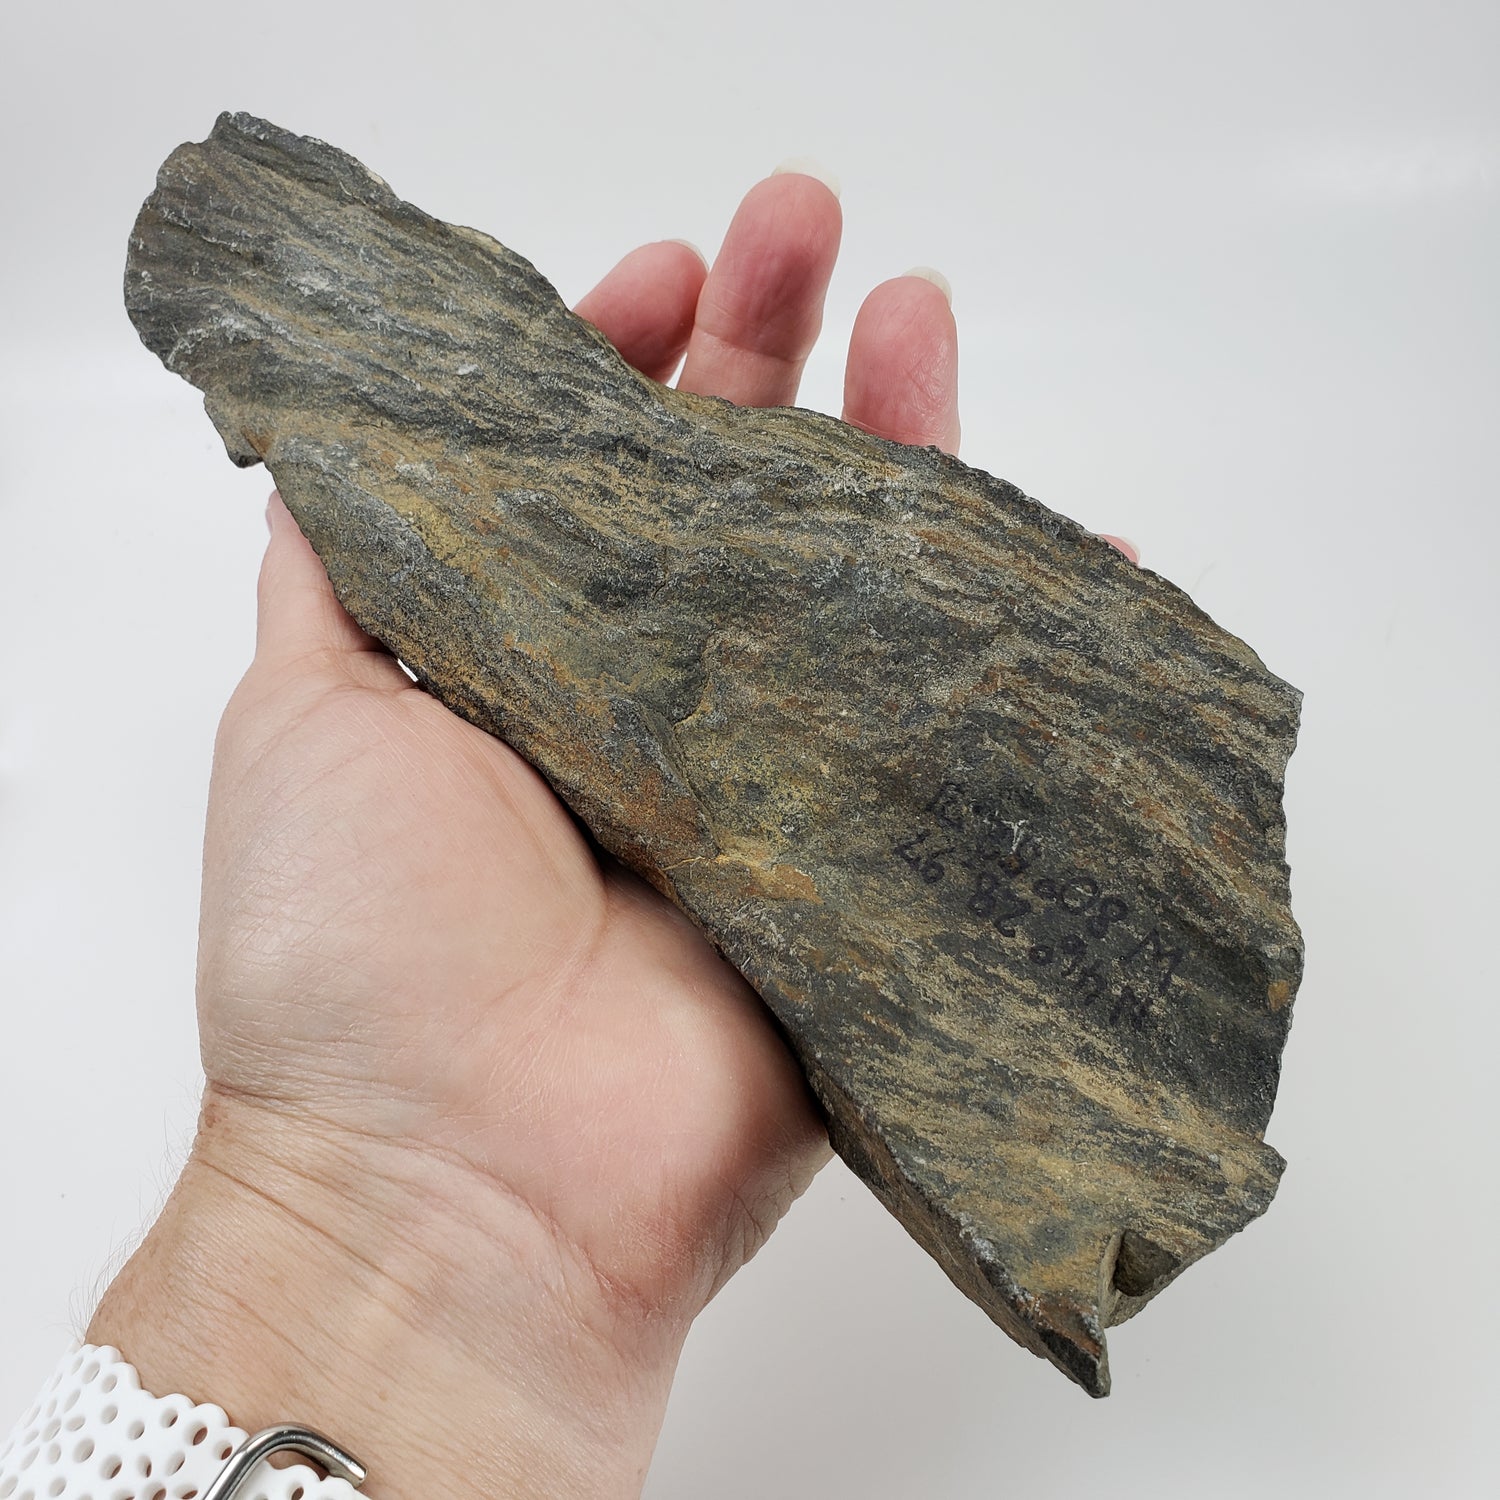 Shatter Cone | 850 grams |  Impactite | Sudbury Impact Structure | Ontario, Canada